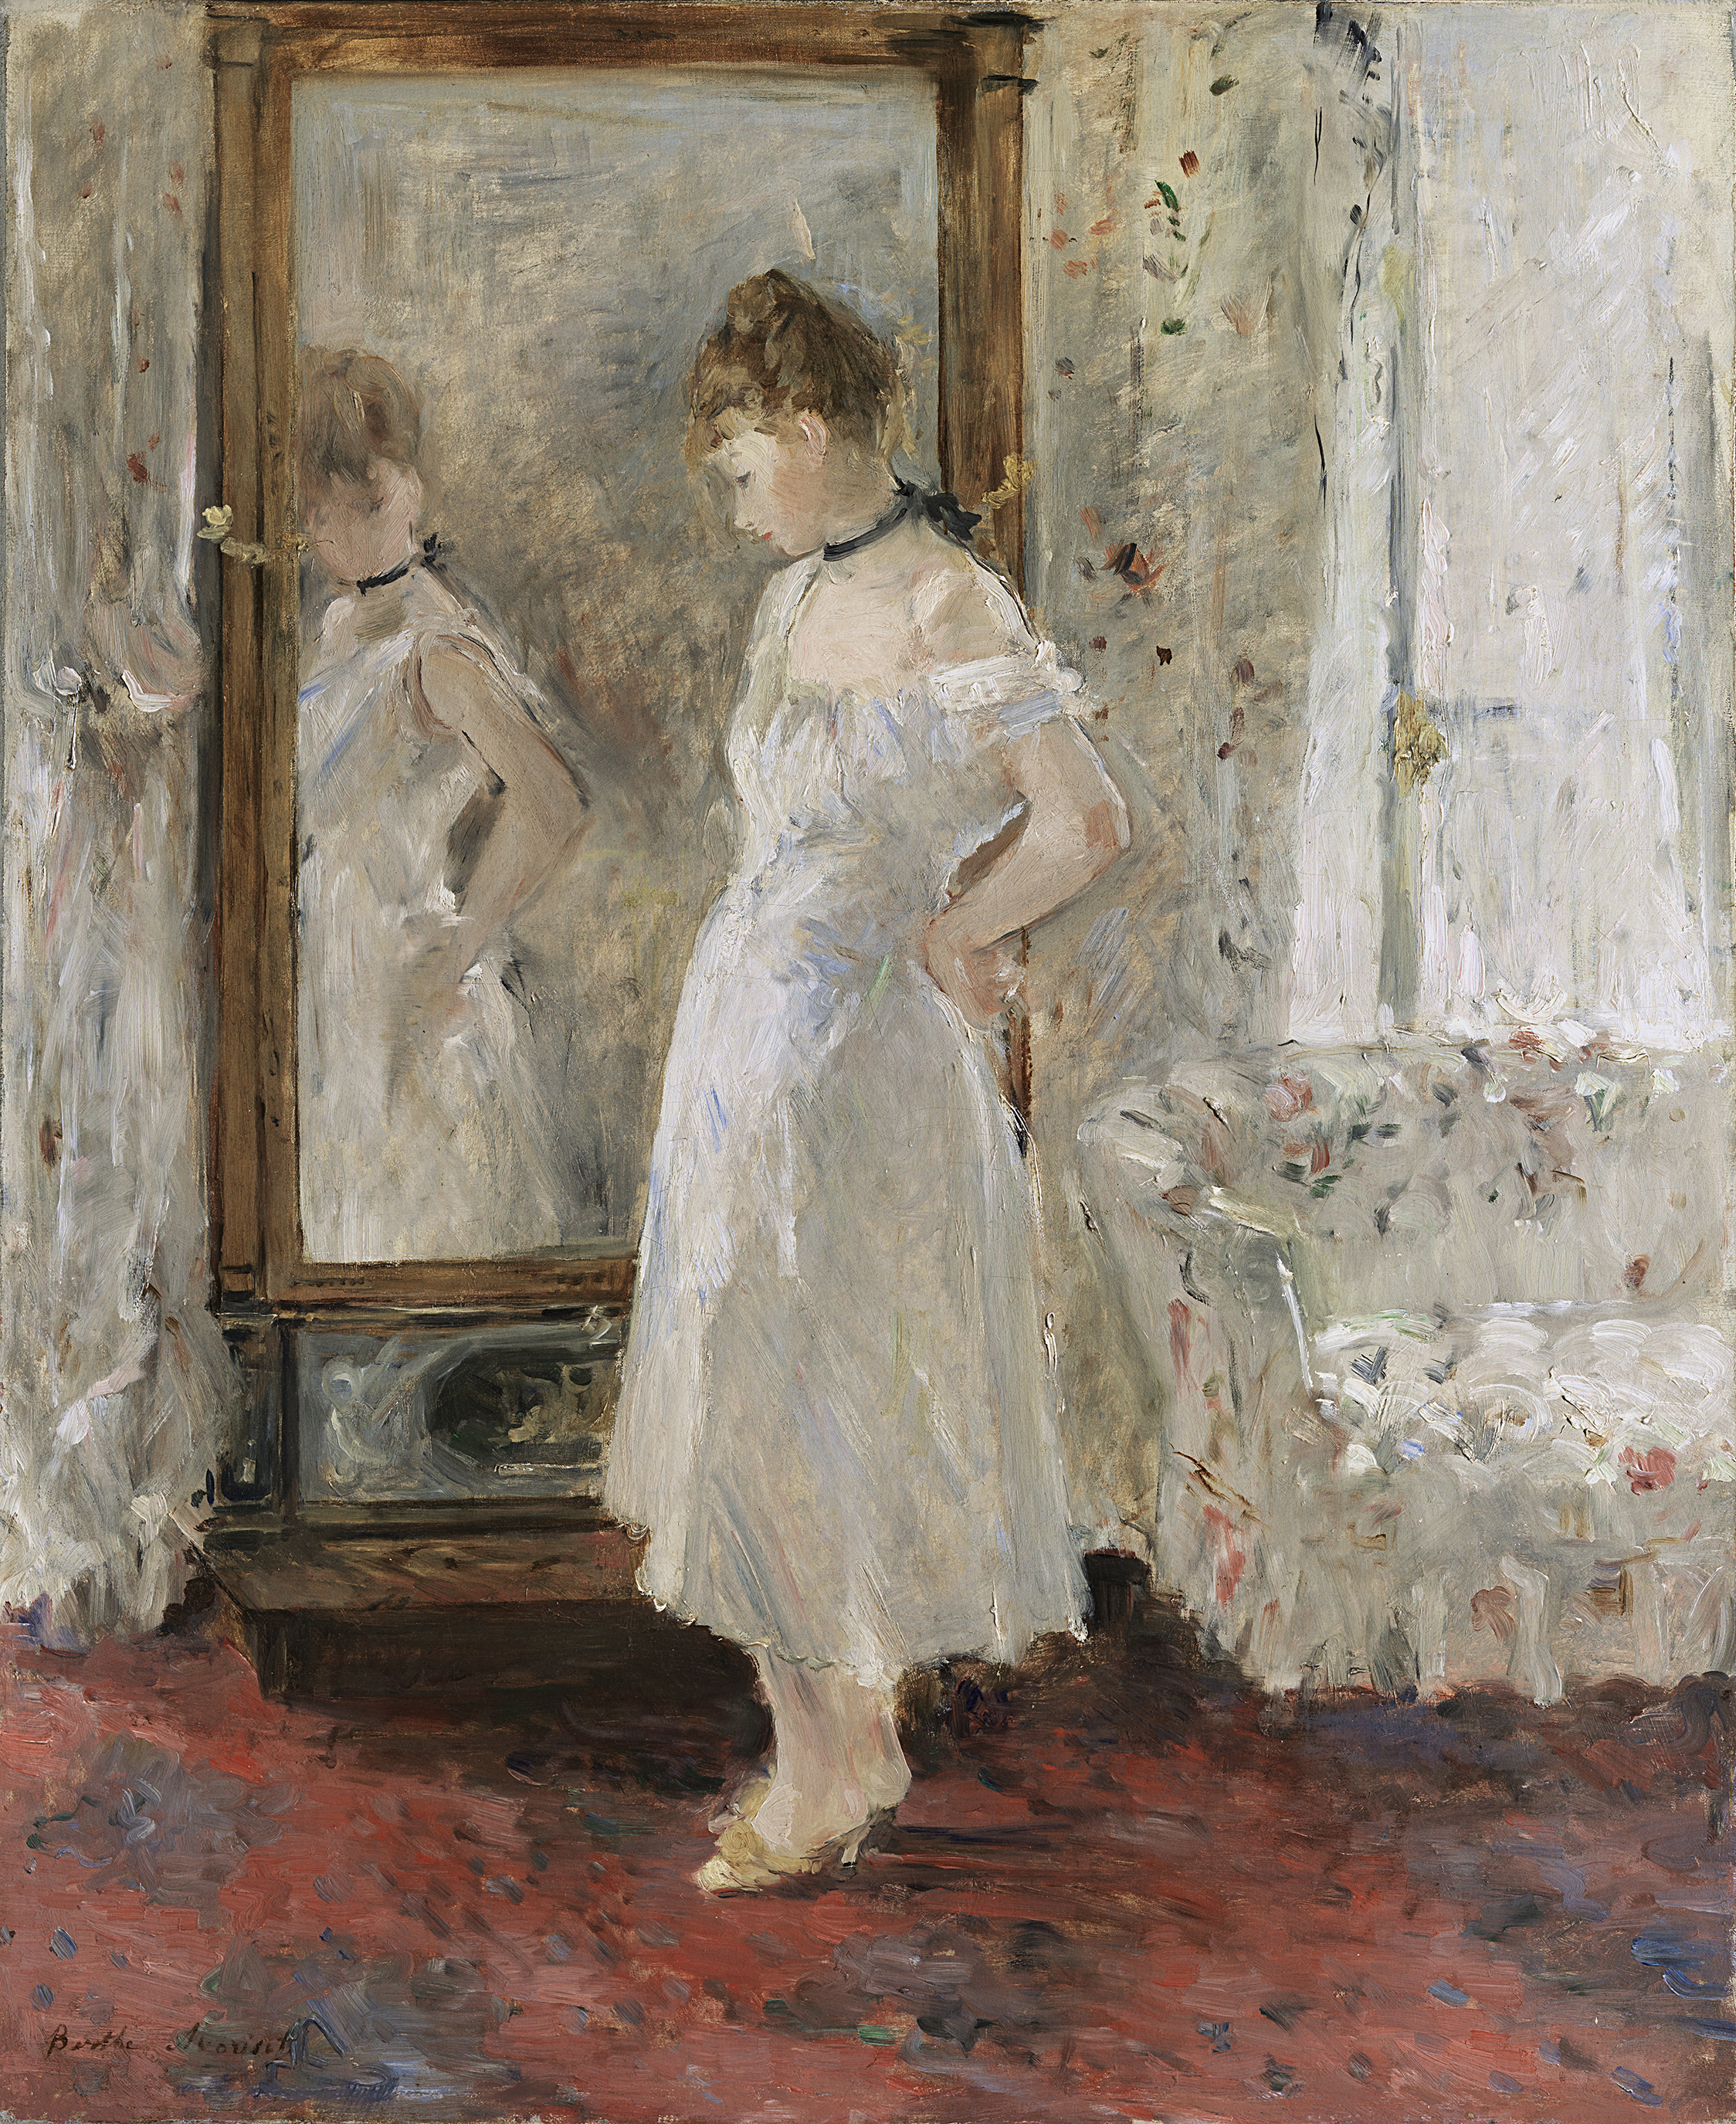 Der Spiegel der Psyche by Berthe Morisot - 1876 - 65 x 54 cm Museo Nacional Thyssen-Bornemisza